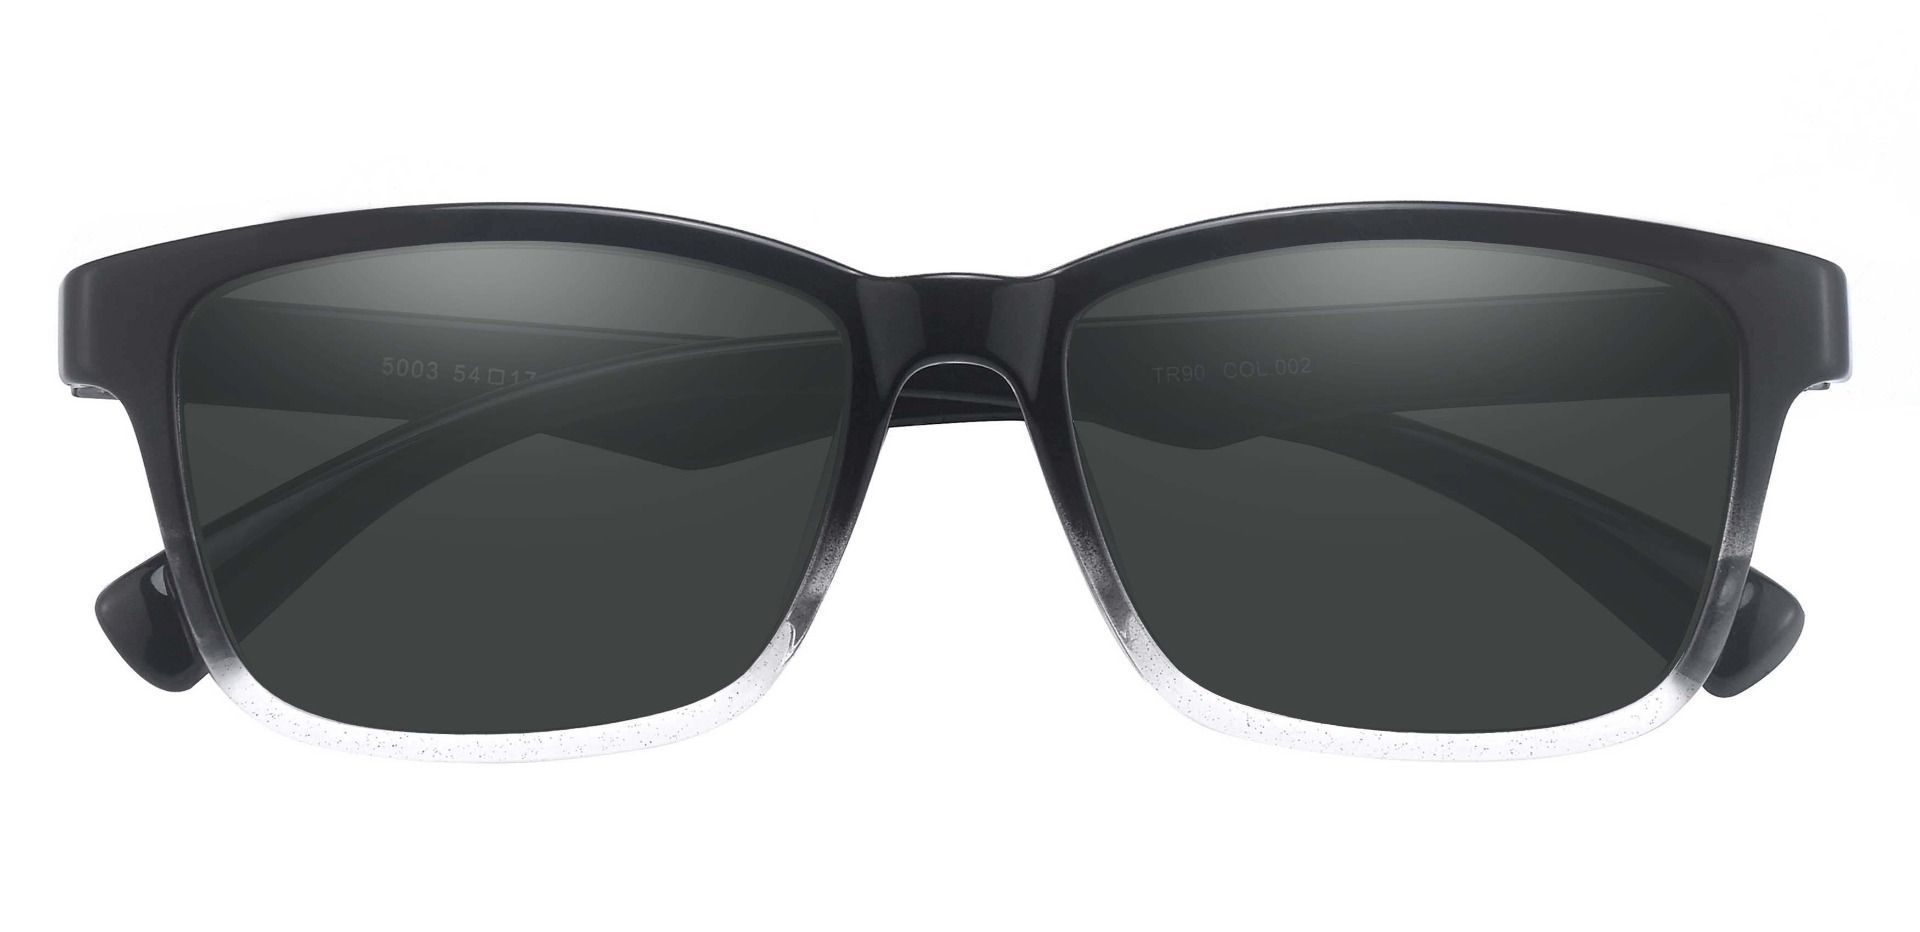 Hoover Rectangle Prescription Sunglasses - Black Frame With Gray Lenses